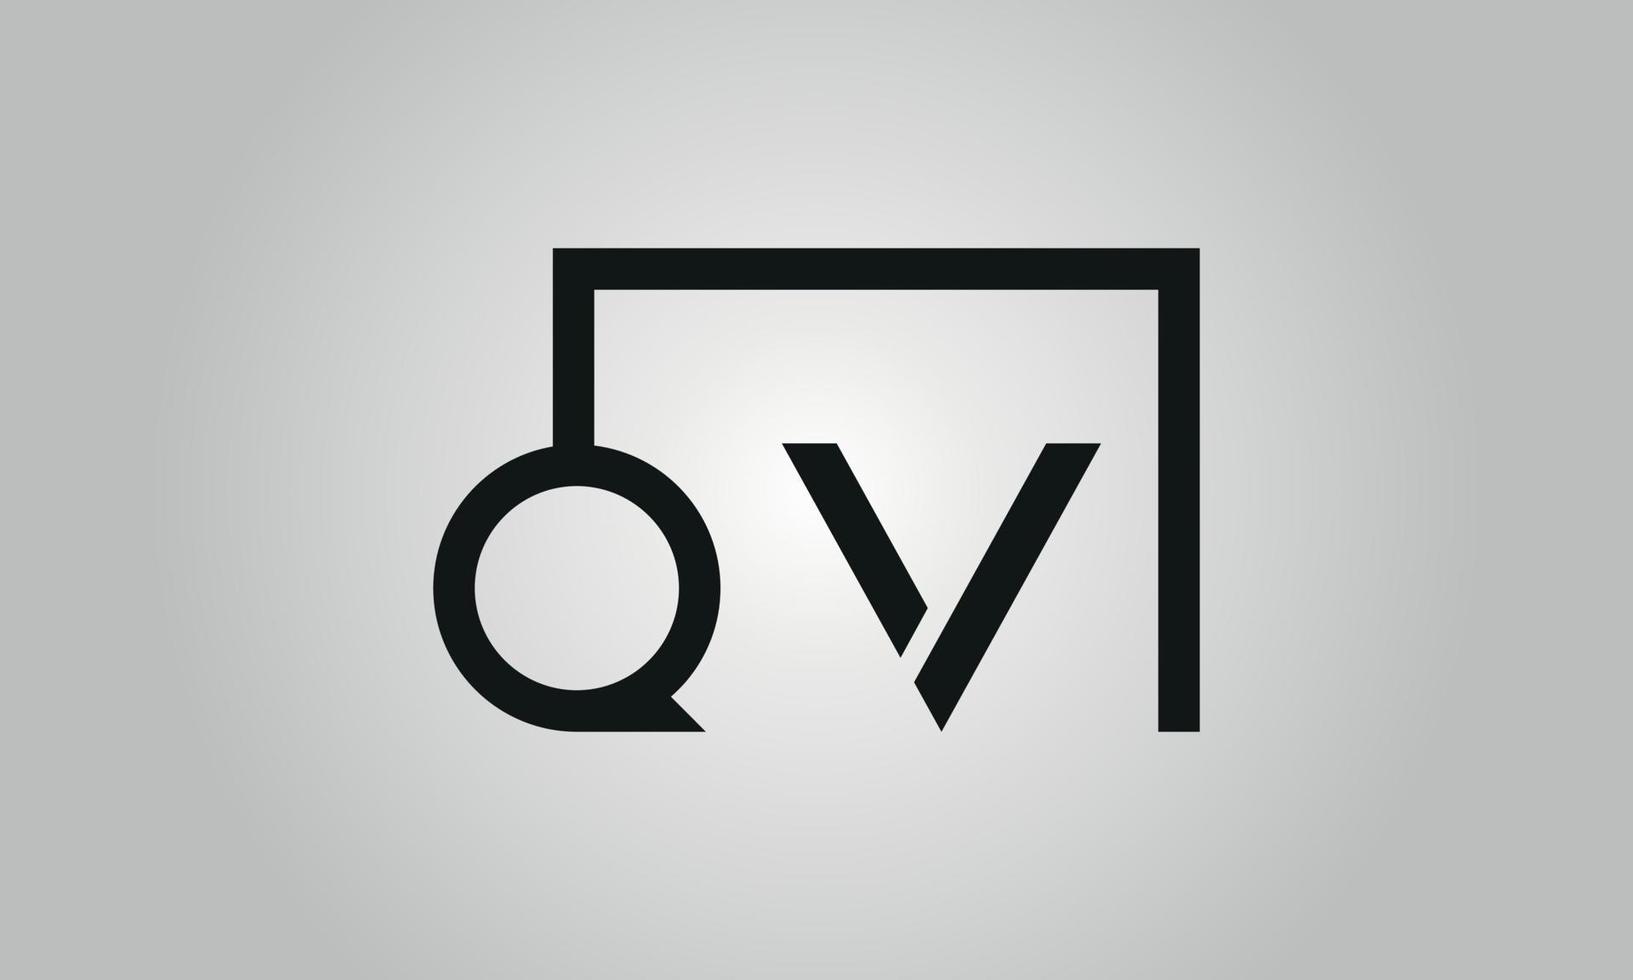 brief qv logo ontwerp. qv logo met plein vorm in zwart kleuren vector vrij vector sjabloon.